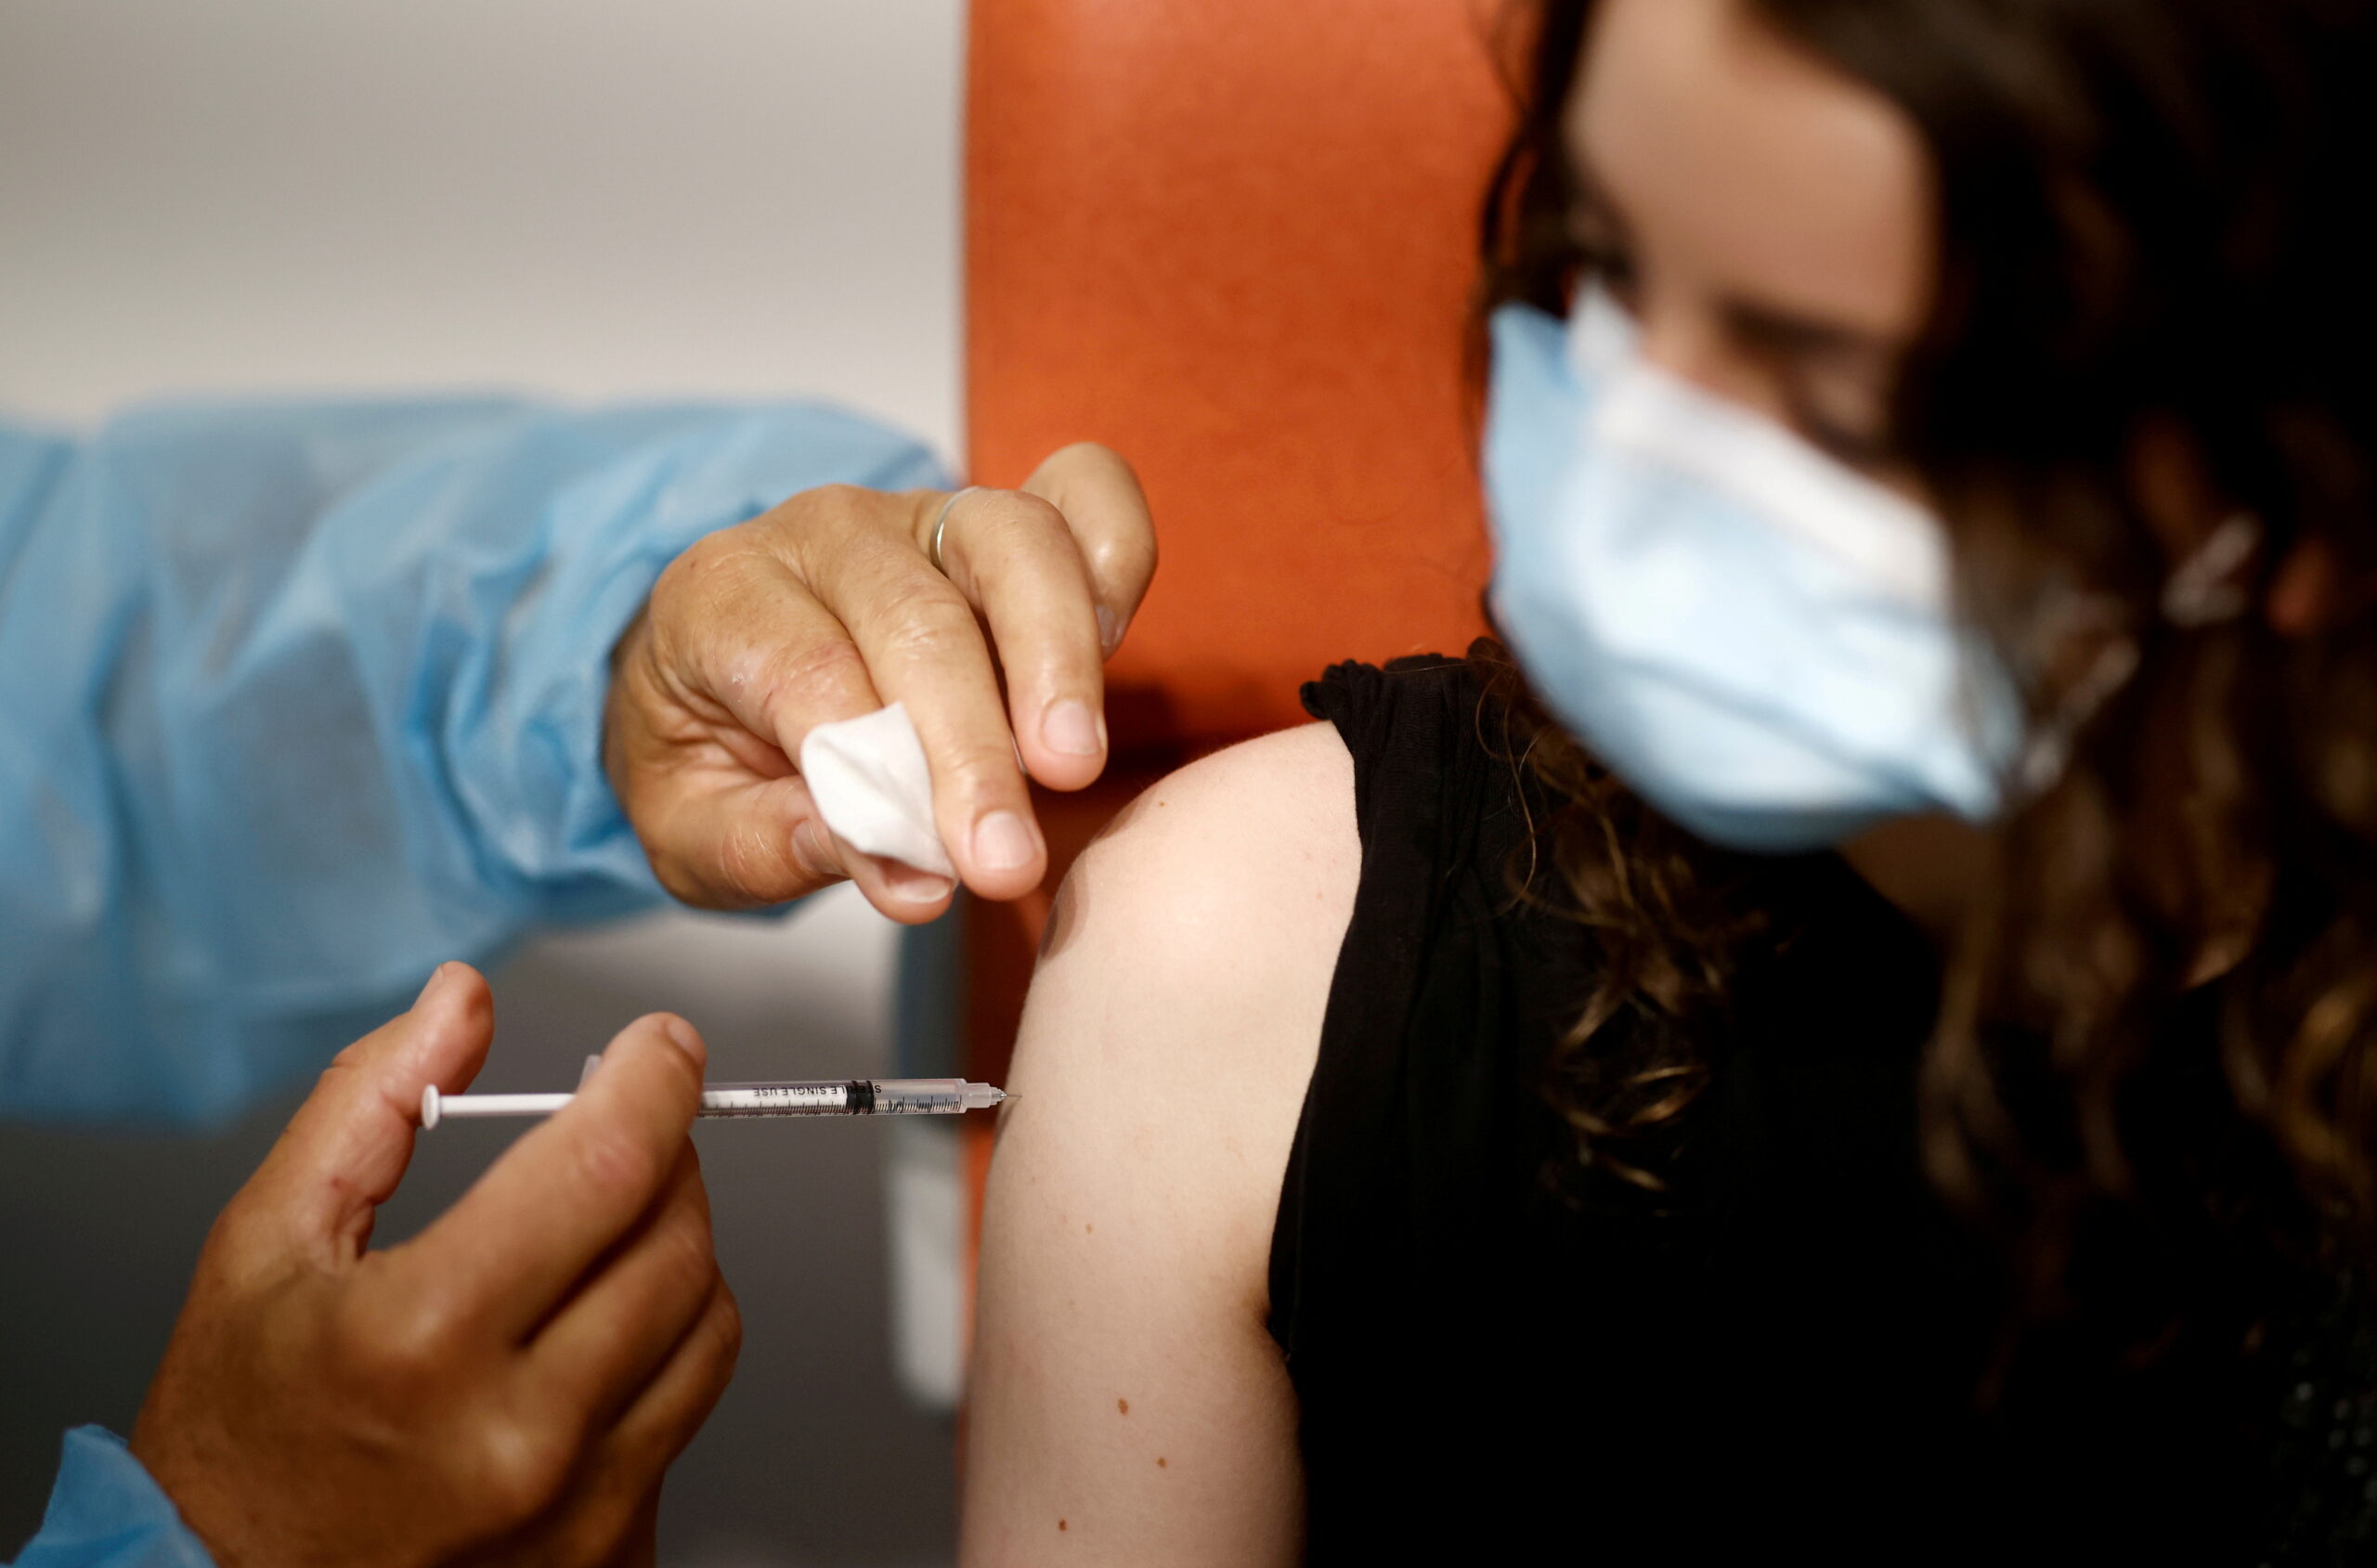 ฝรั่งเศสเริ่มใช้ “วัคซีนพาสปอร์ต” ขึ้นหอไอเฟลต้องฉีดวัคซีนก่อน – ต่างประเทศ